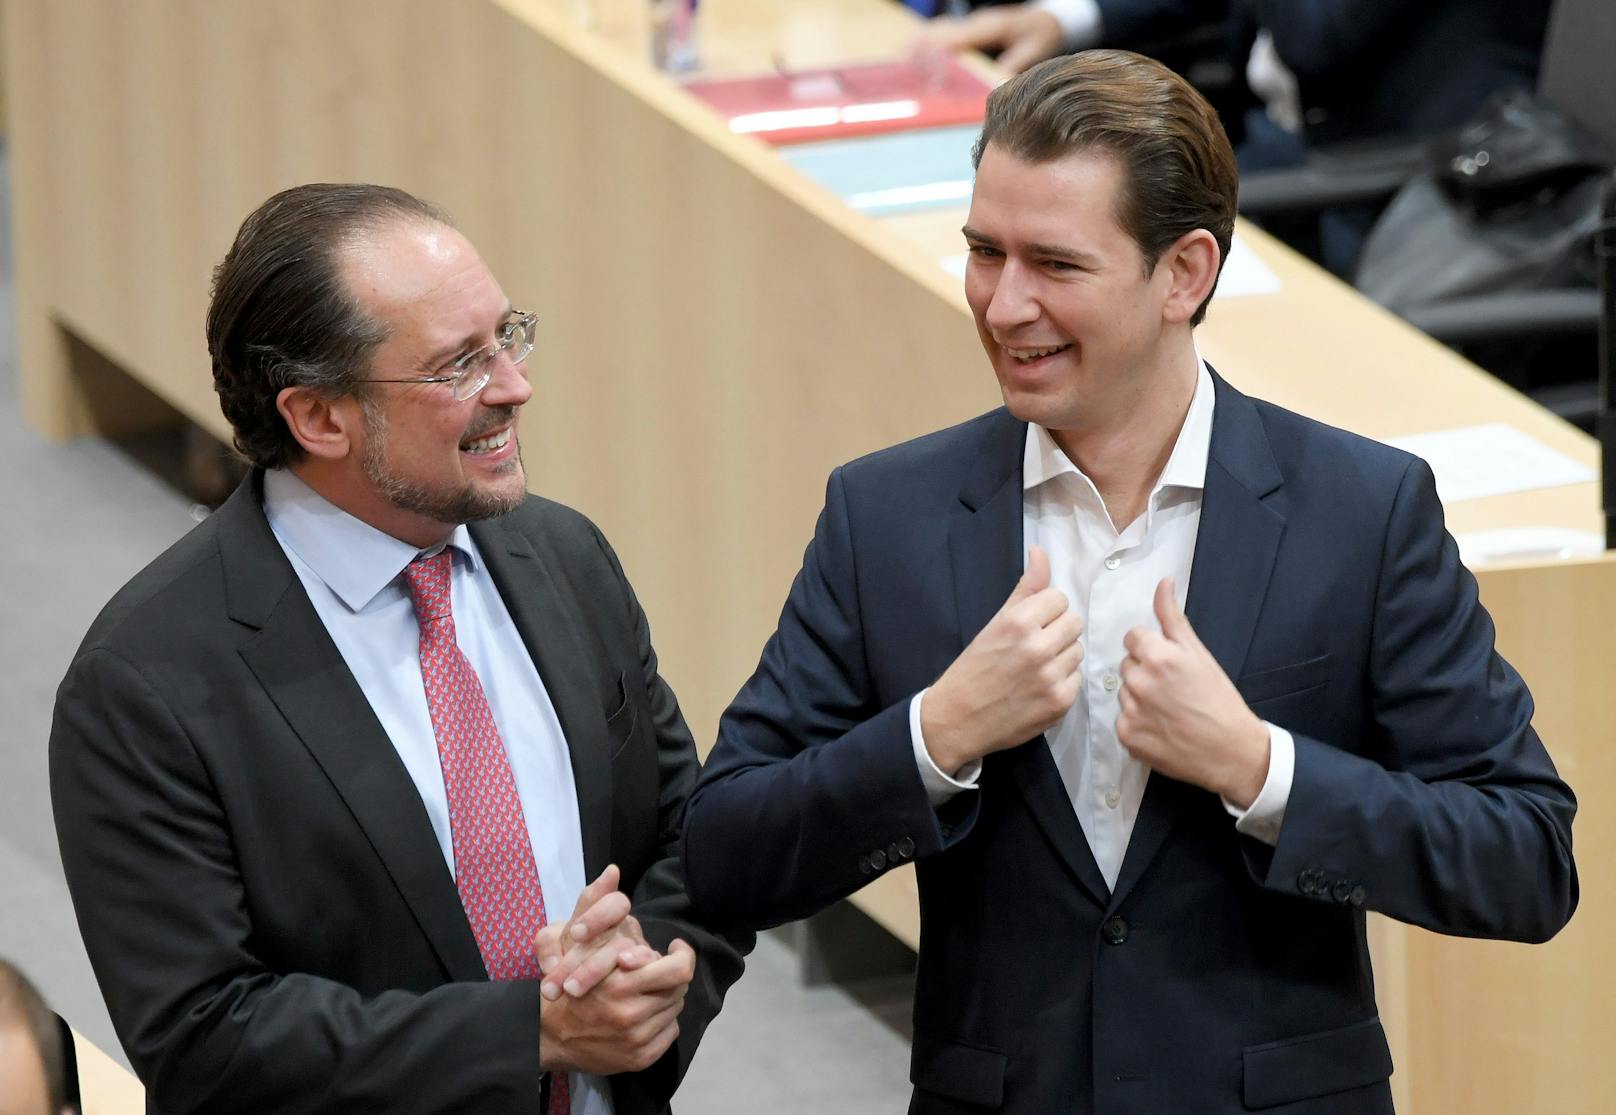 Da hatten sie noch gut lachen: Eine neue Umfrage stürzt die ÖVP und Ex-Kanzler Kurz tief in die Krise.